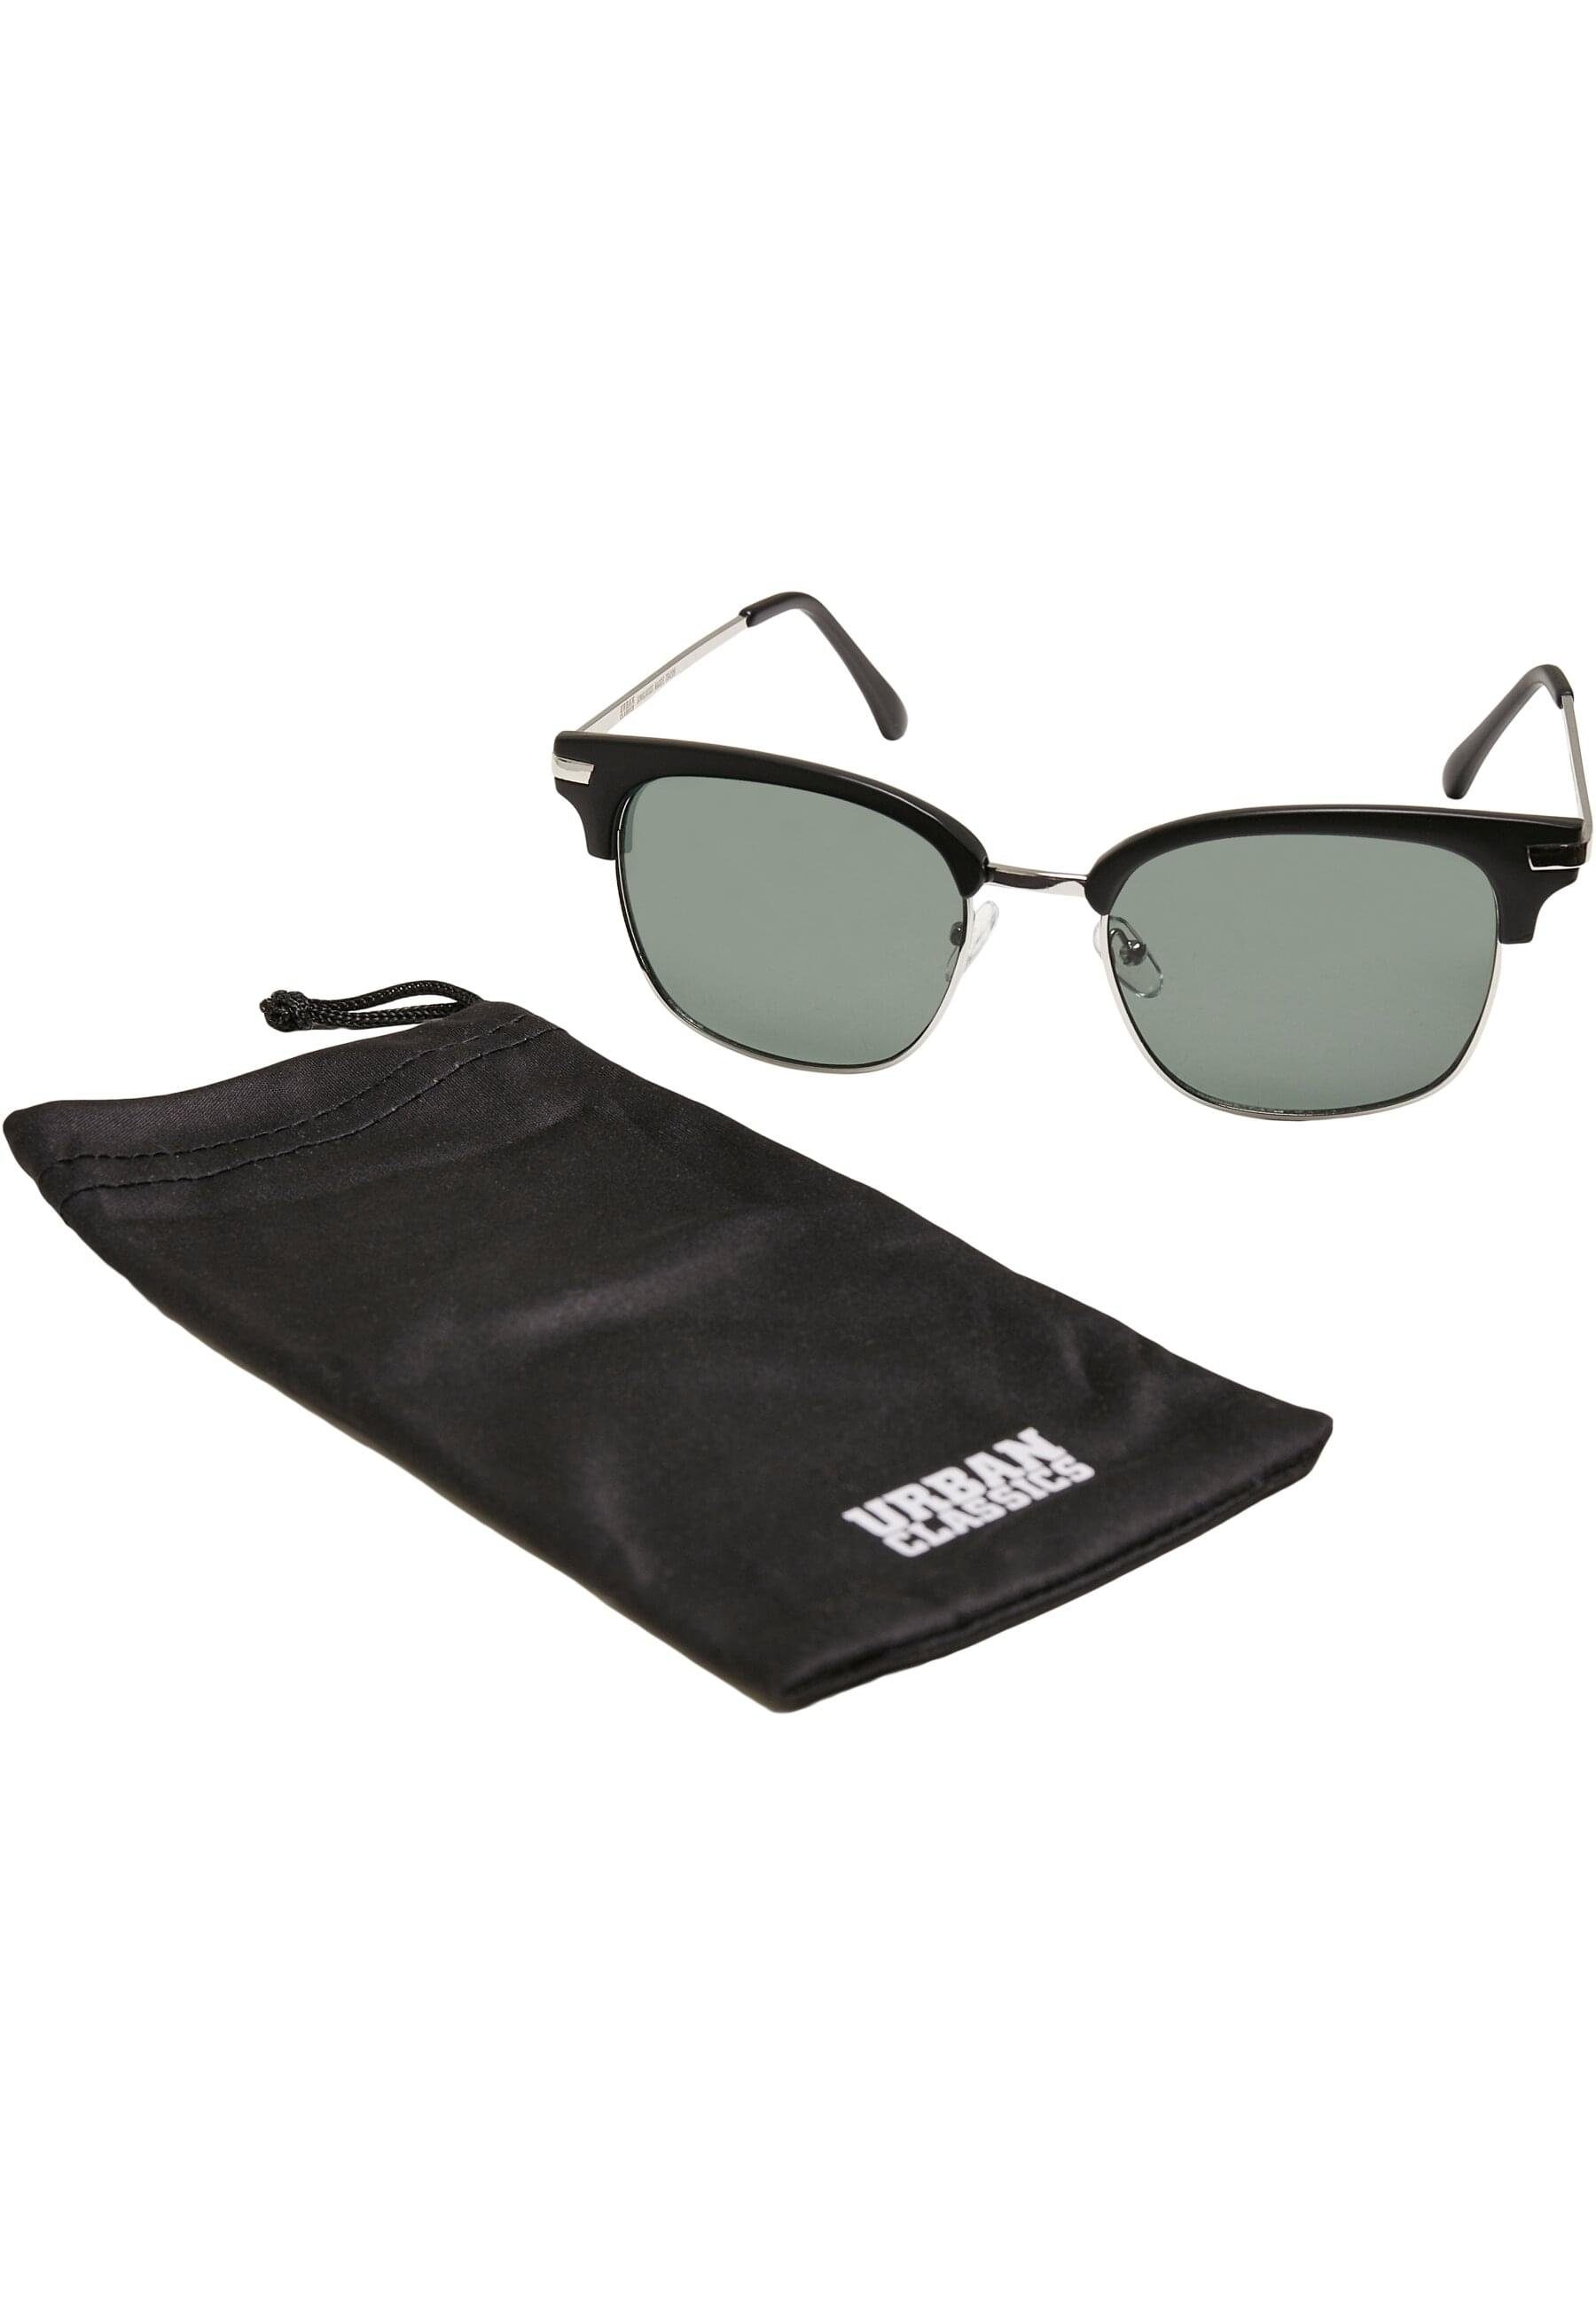 Sunglasses Crete Unisex CLASSICS URBAN Sonnenbrille